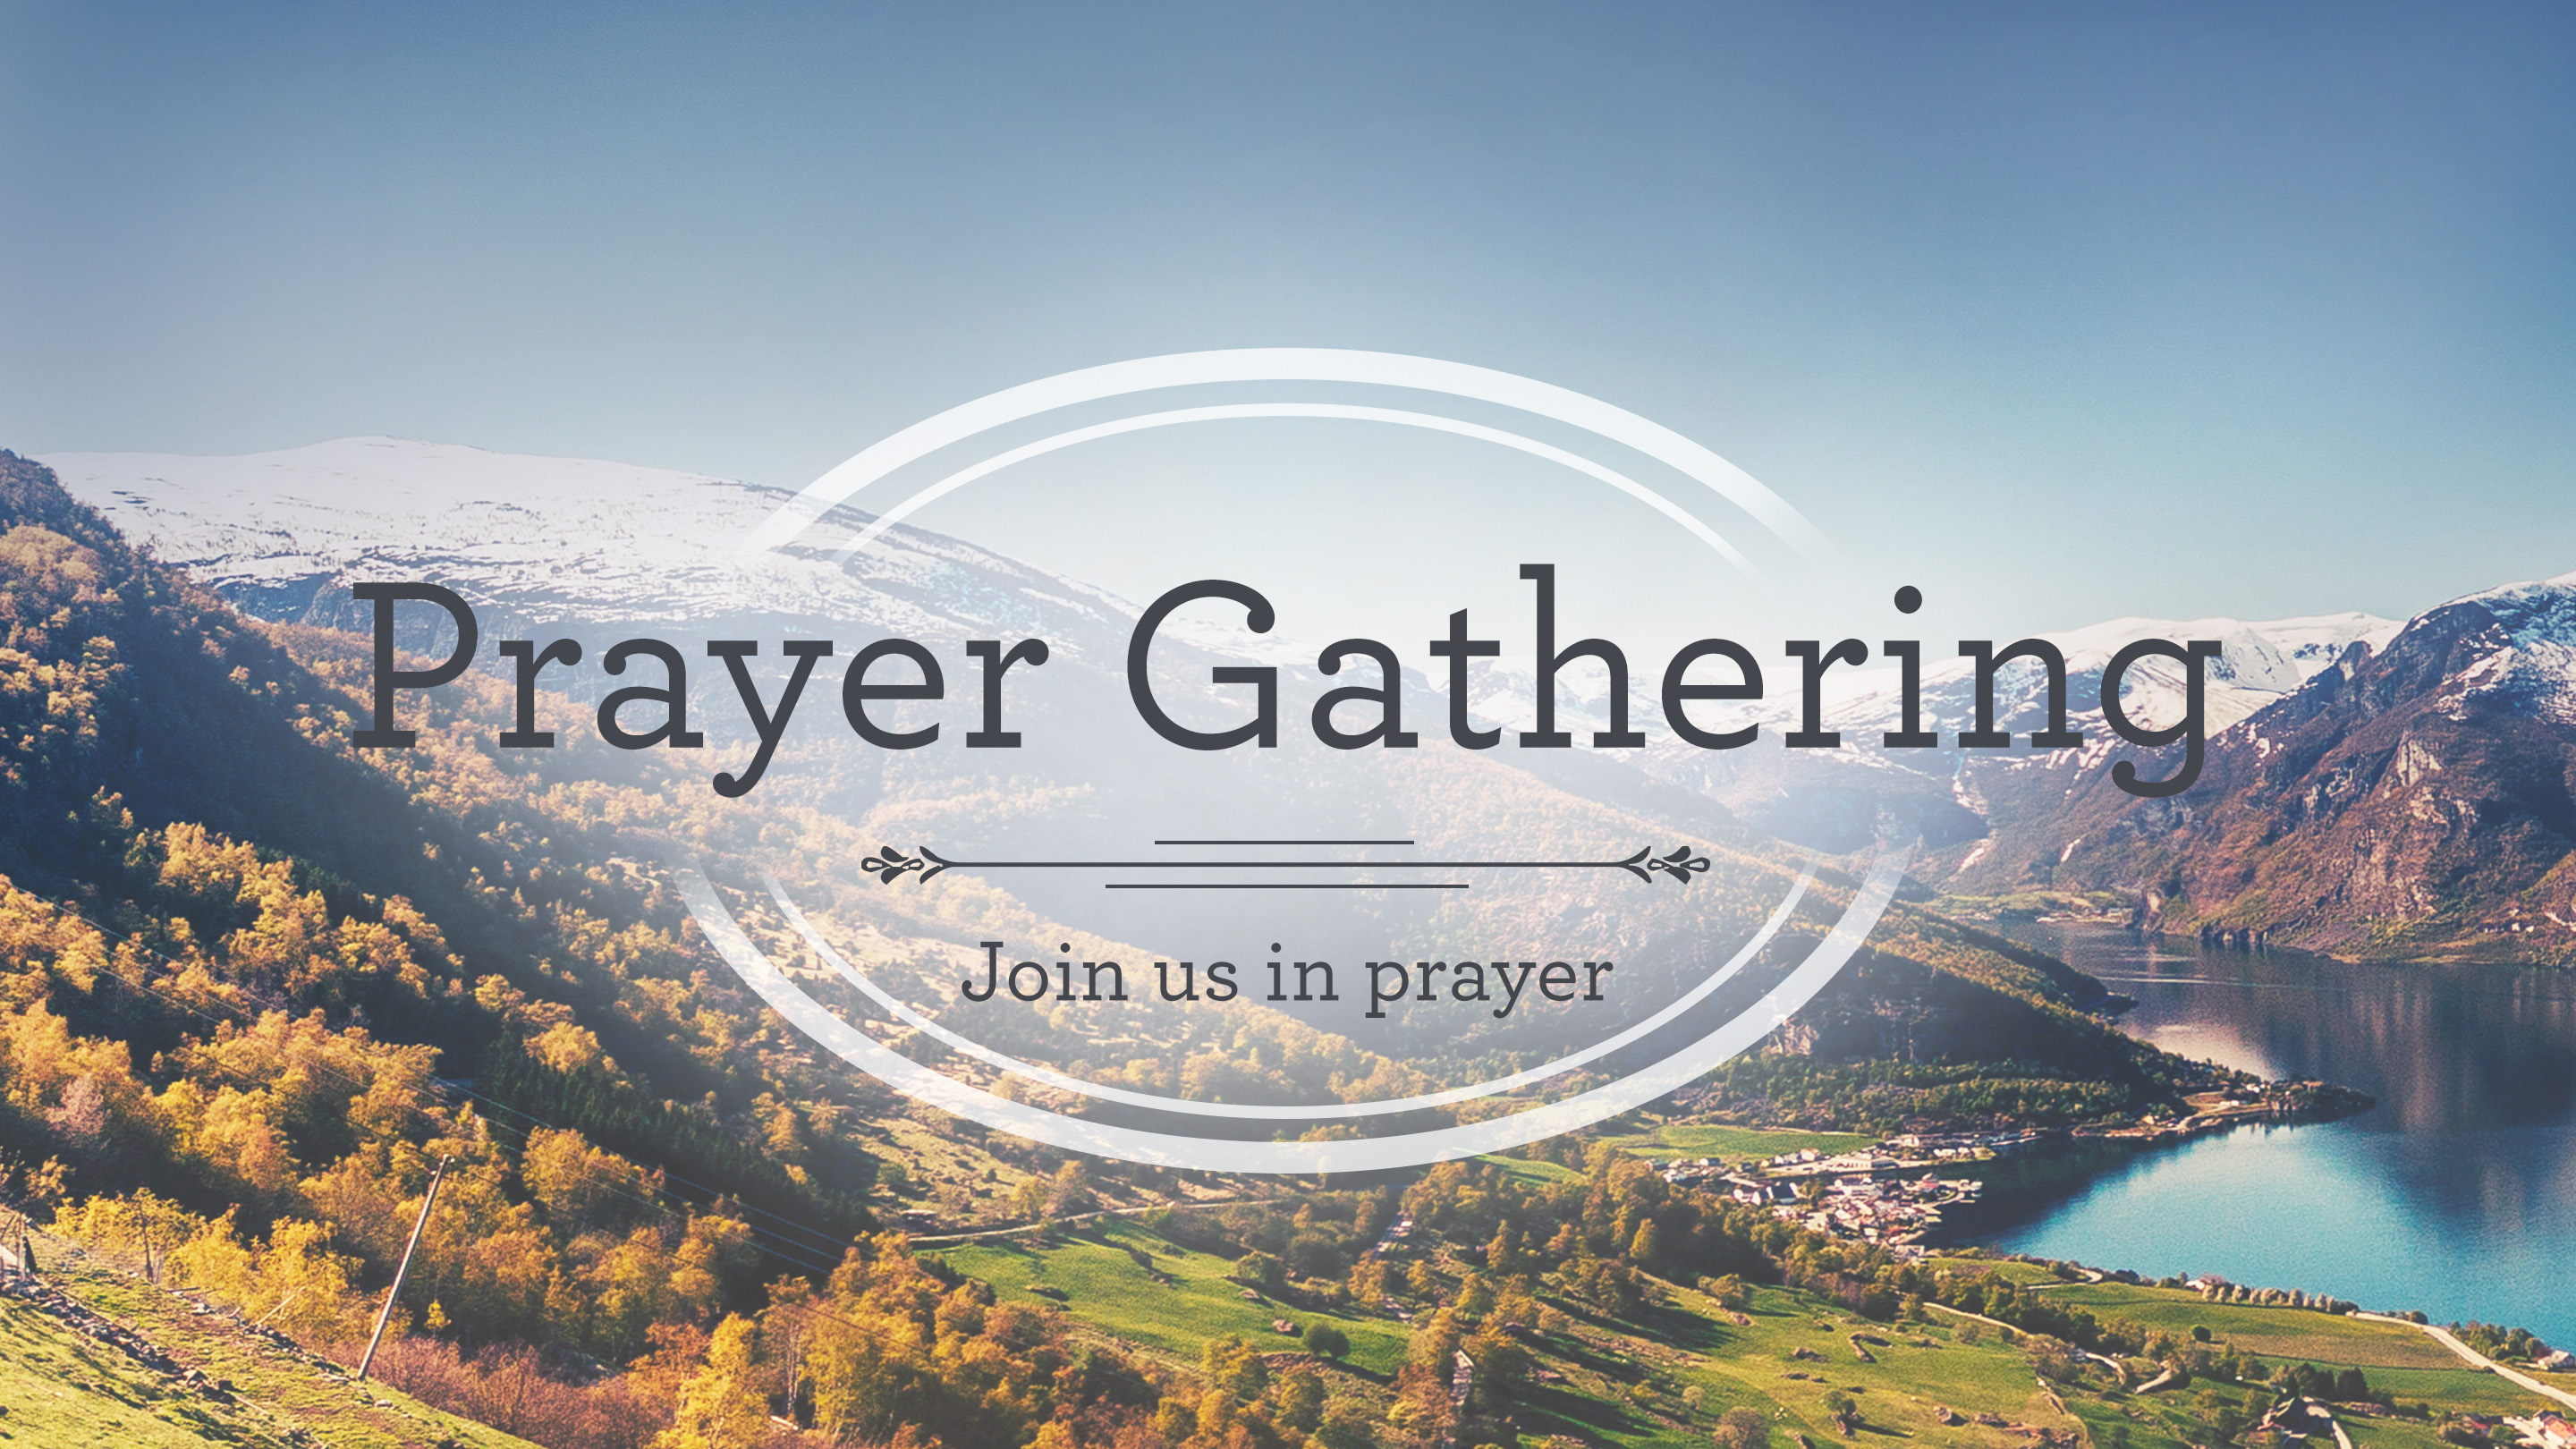 Prayer Gathering image